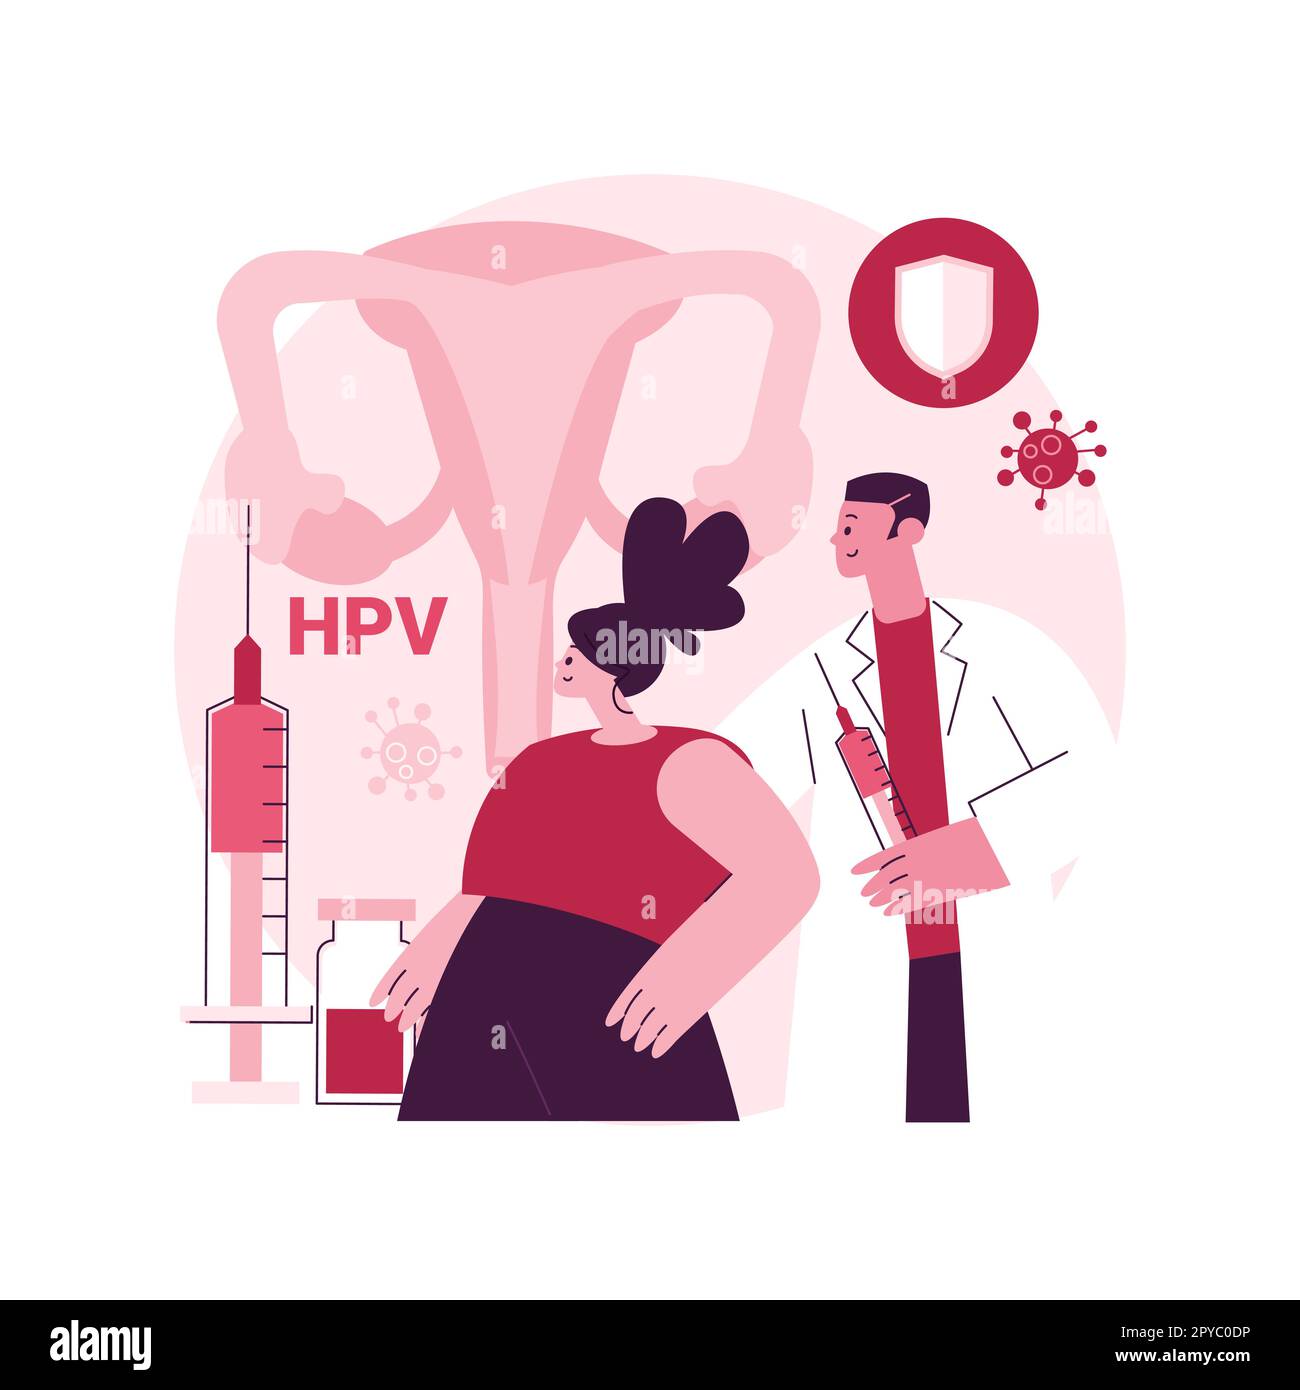 HPV-Impfung abstrakte Konzept Vektor-Illustration. Schutz vor Gebärmutterhalskrebs, humanes Papillomavirus-Immunisierungsprogramm, HPV-Impfung, Prävention von Infektionen abstrakte Metapher. Stock Vektor